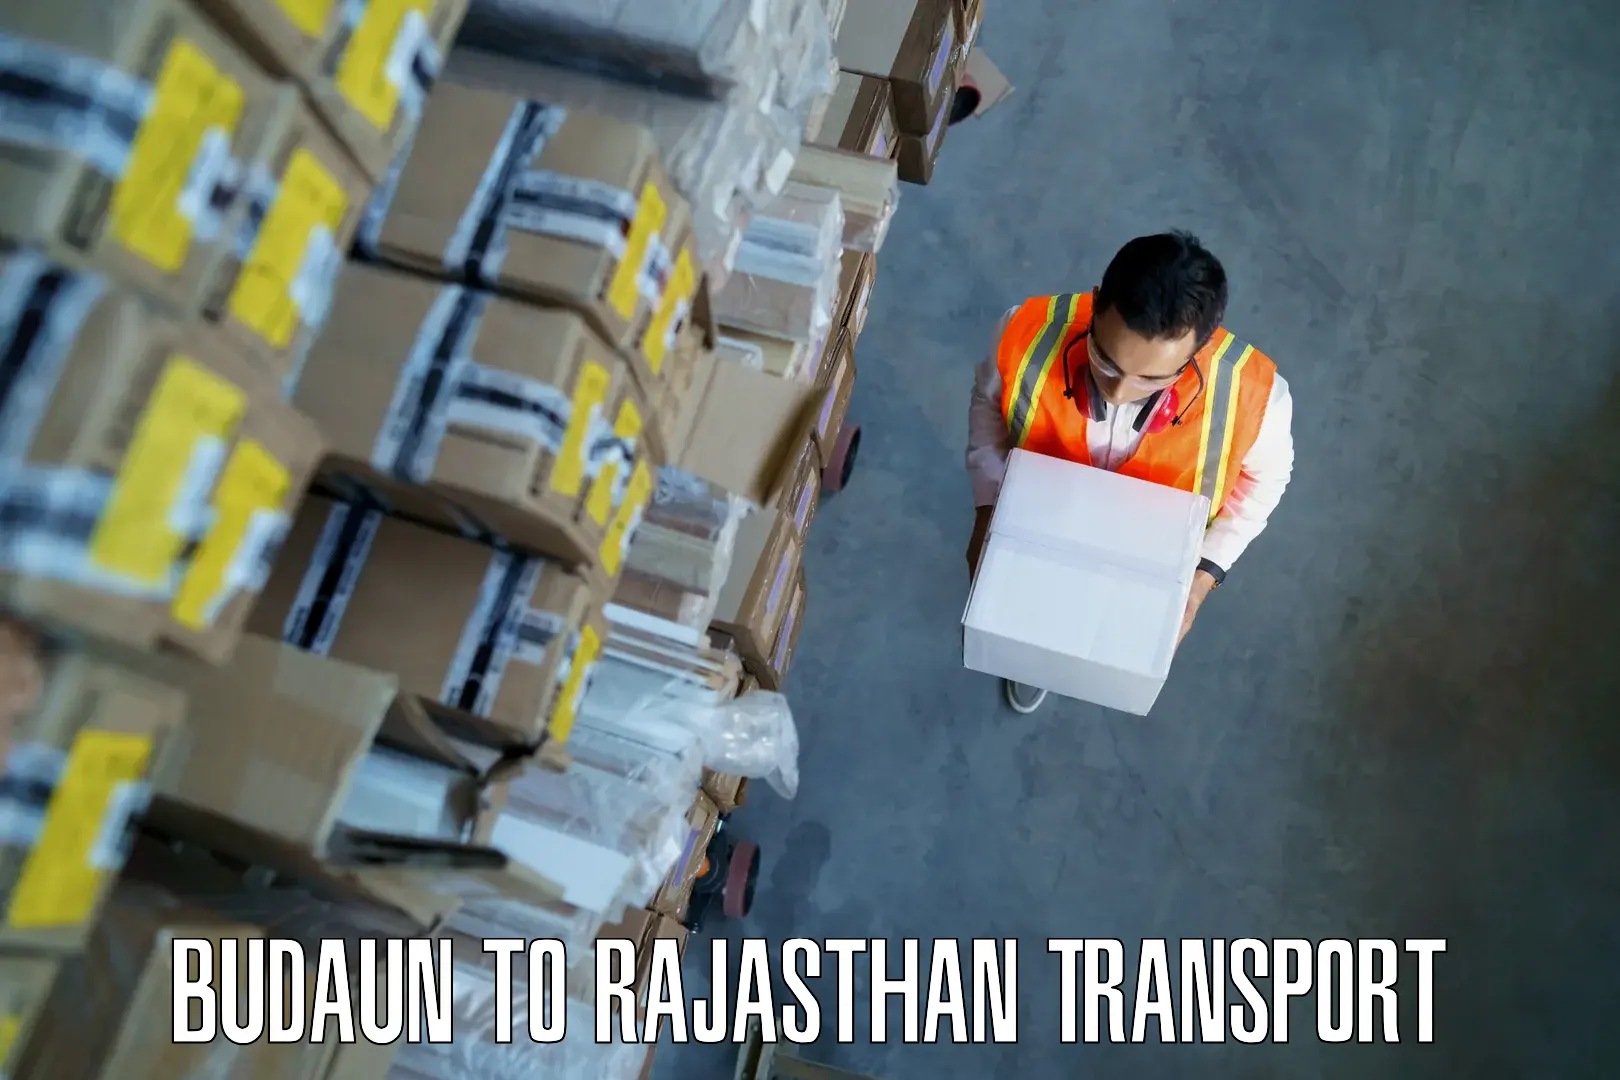 Truck transport companies in India Budaun to Banswara